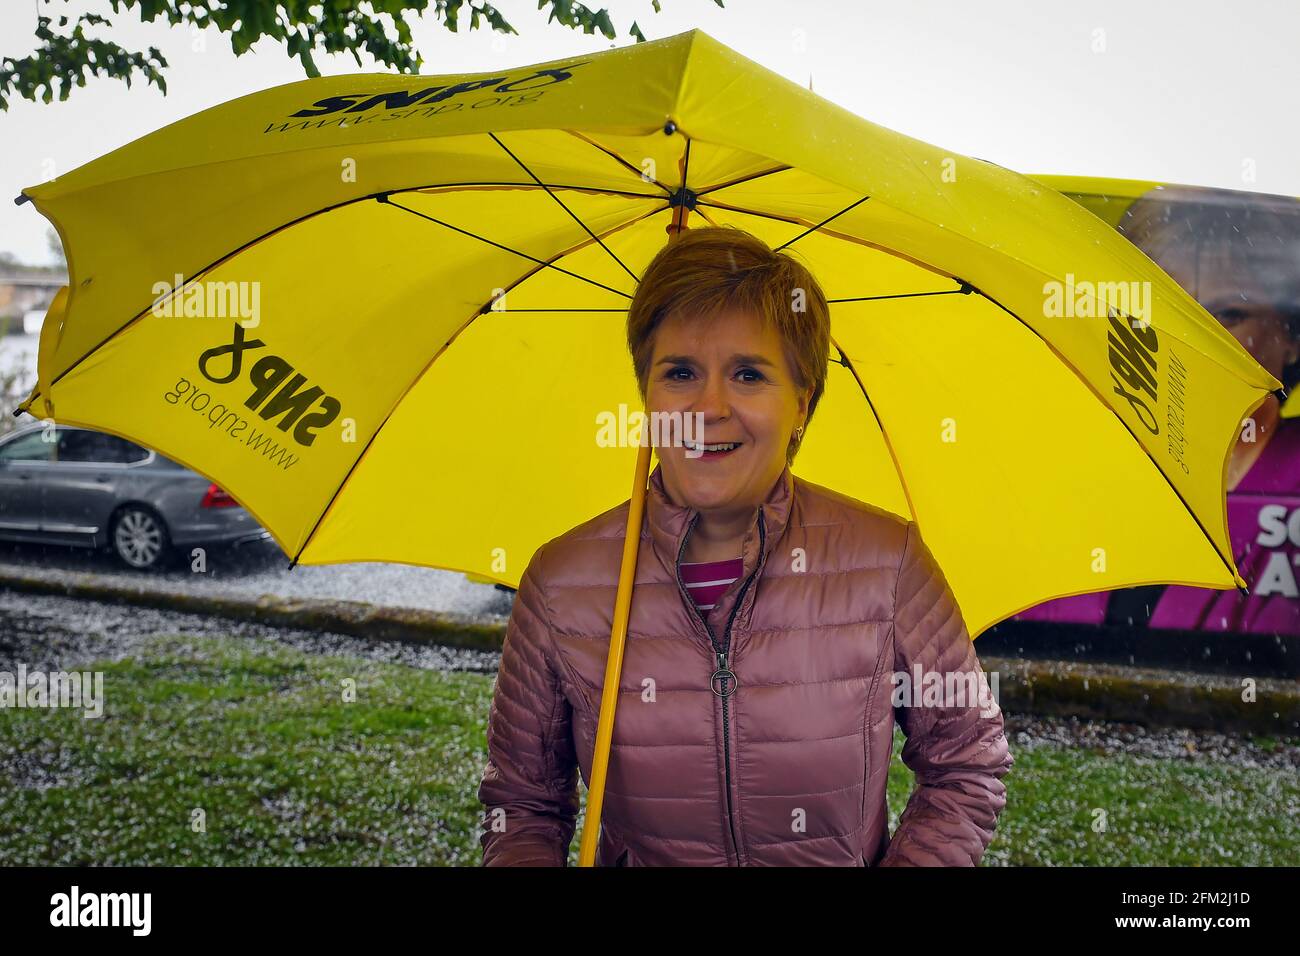 Die erste Ministerin Schottlands und Vorsitzende der Scottish National Party (SNP), Nicola Sturgeon, war in Dumbarton während des Wahlkampfs für die schottischen Parlamentswahlen. Bilddatum: Mittwoch, 5. Mai 2021. Stockfoto